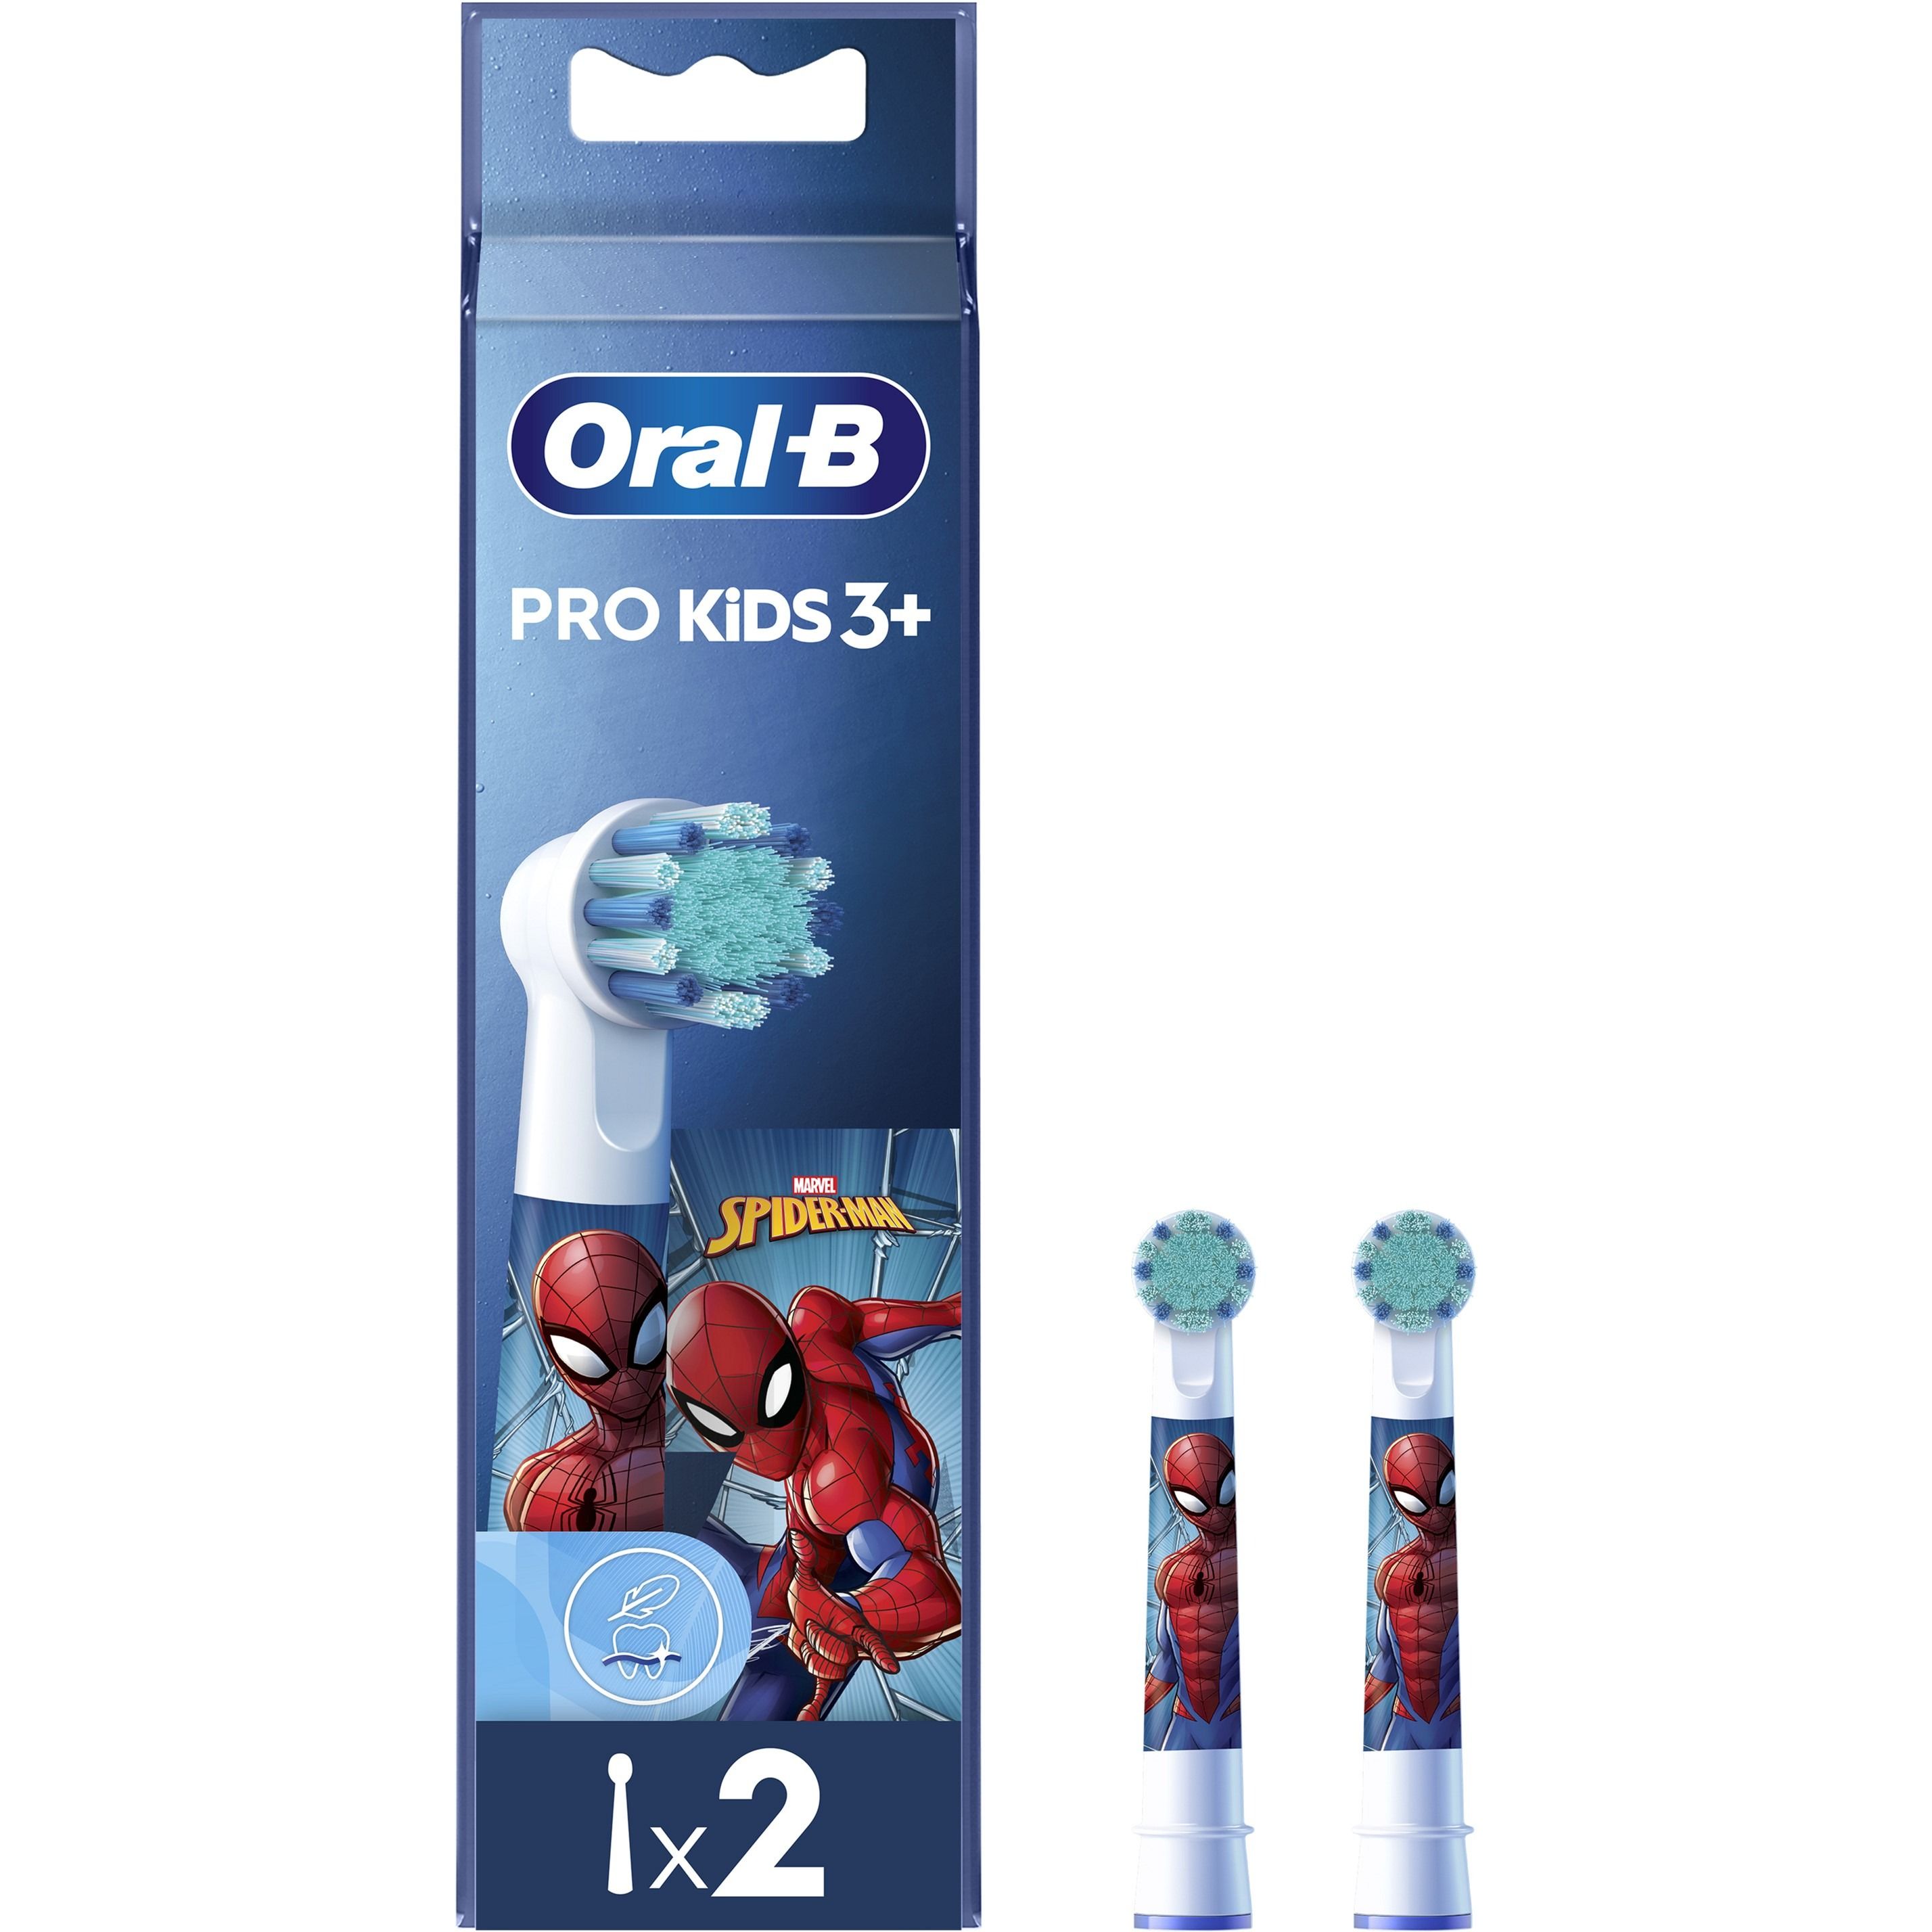 Сменные насадки к электрической зубной щетке Oral-B Pro Kids 3+ Spiderman EB10S 2 шт. - фото 2